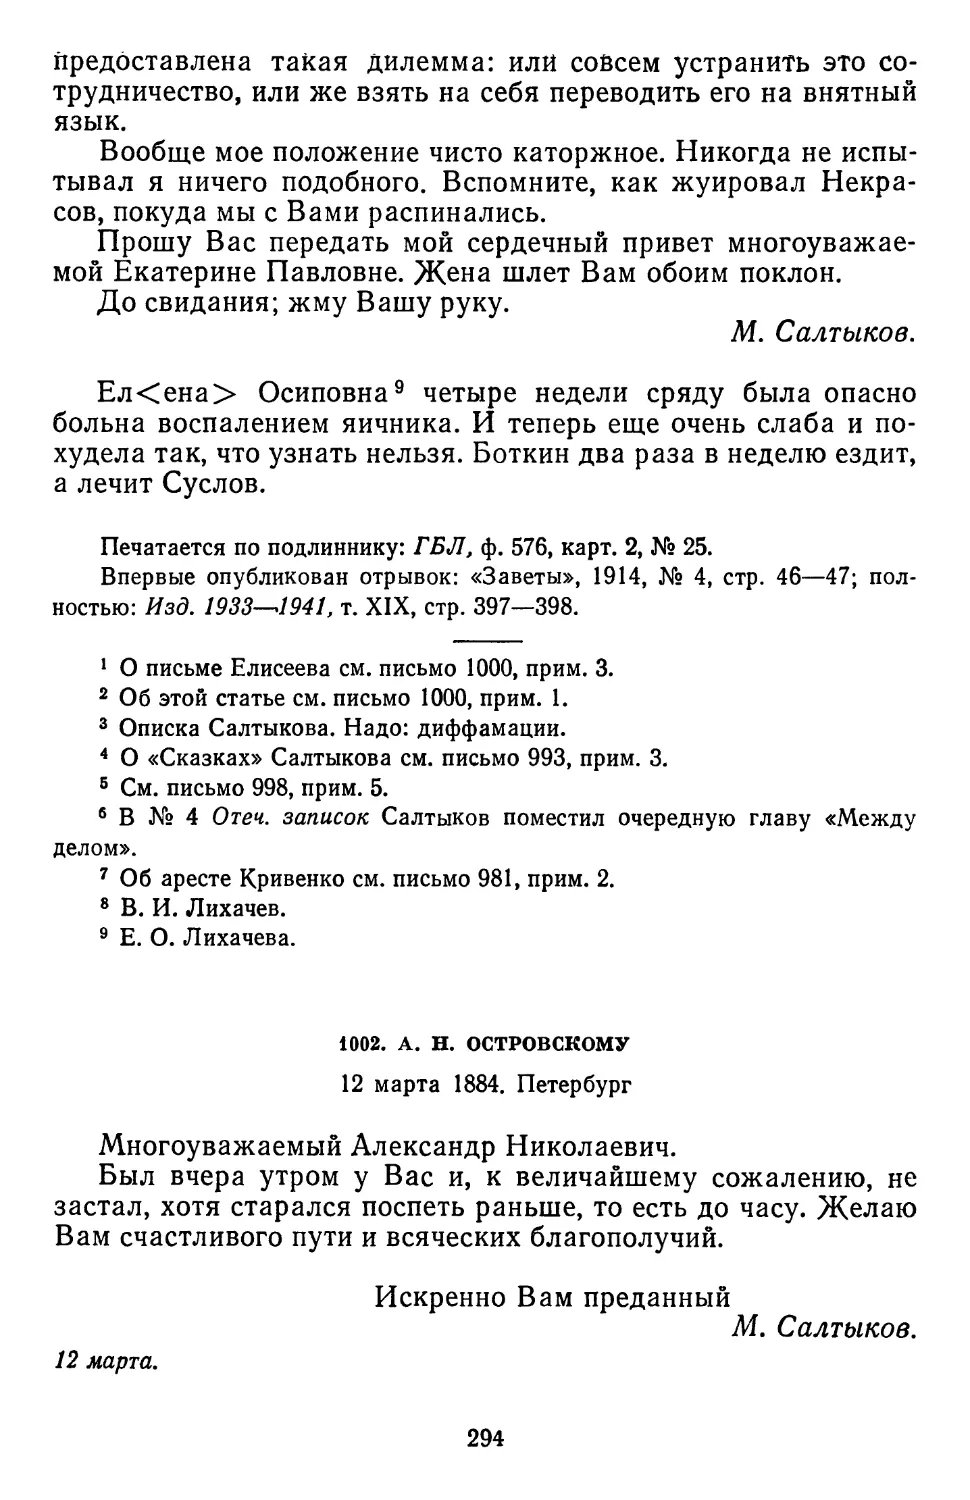 1002.А.Н. Островскому. 12 марта 1884. Петербург